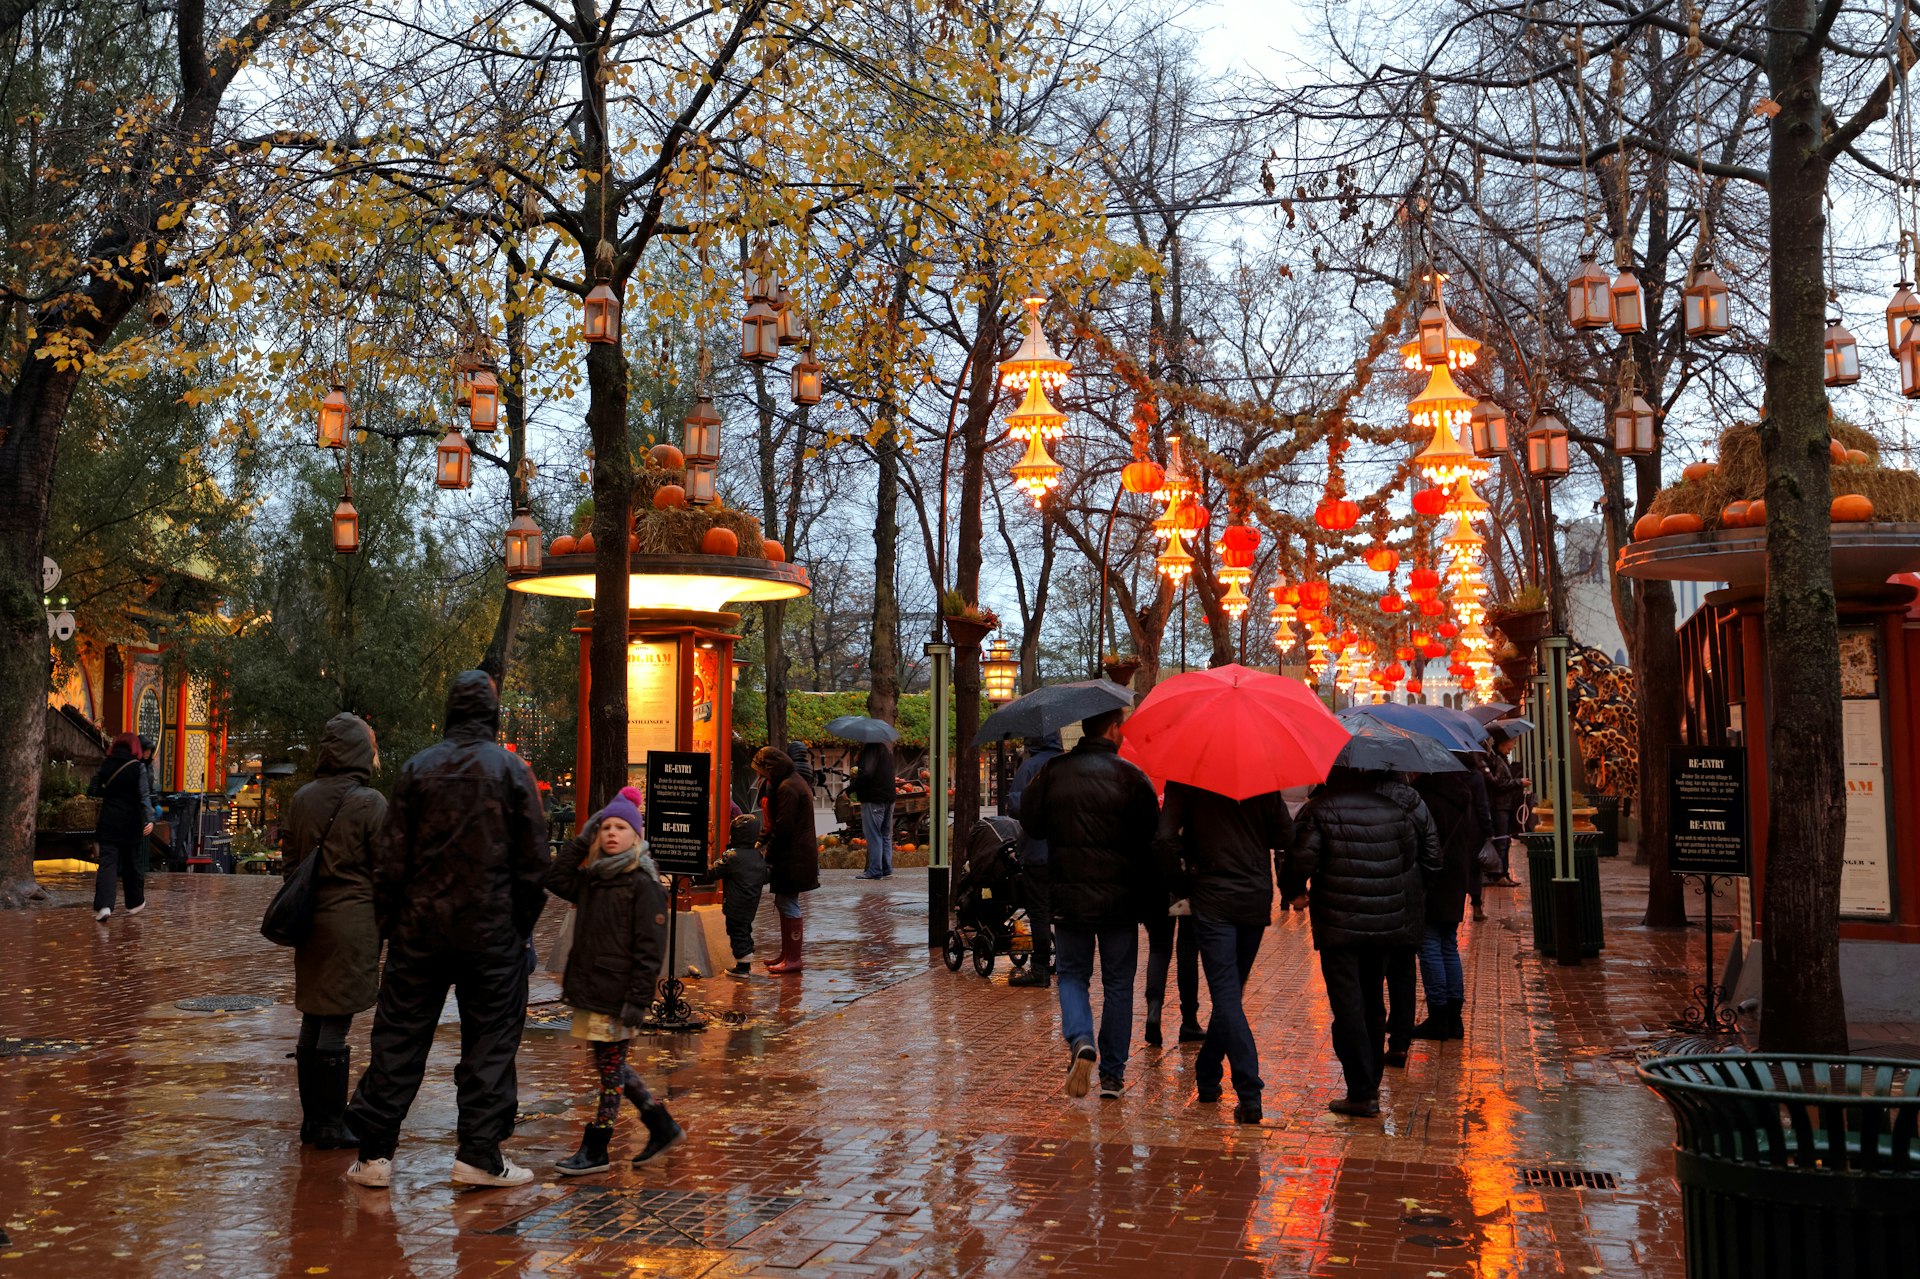 People on a rainy day walk through Tivoli Garden, Copenhagen